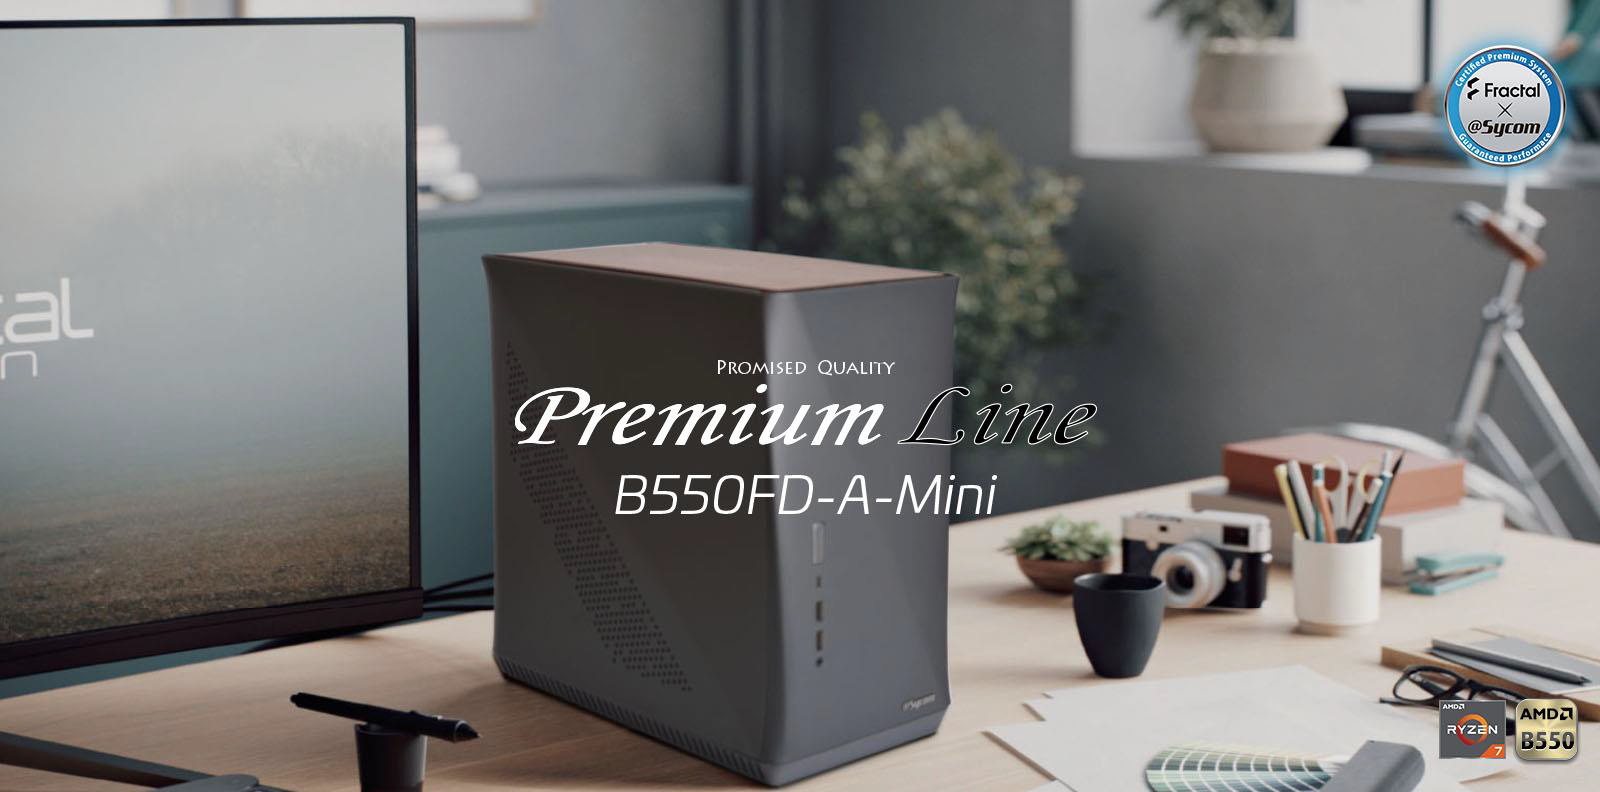 サイコム、本日よりAMD Ryzen 5000シリーズを標準搭載したMini-ITX新製品「Premium-Line B550FD-A-Mini」販売開始